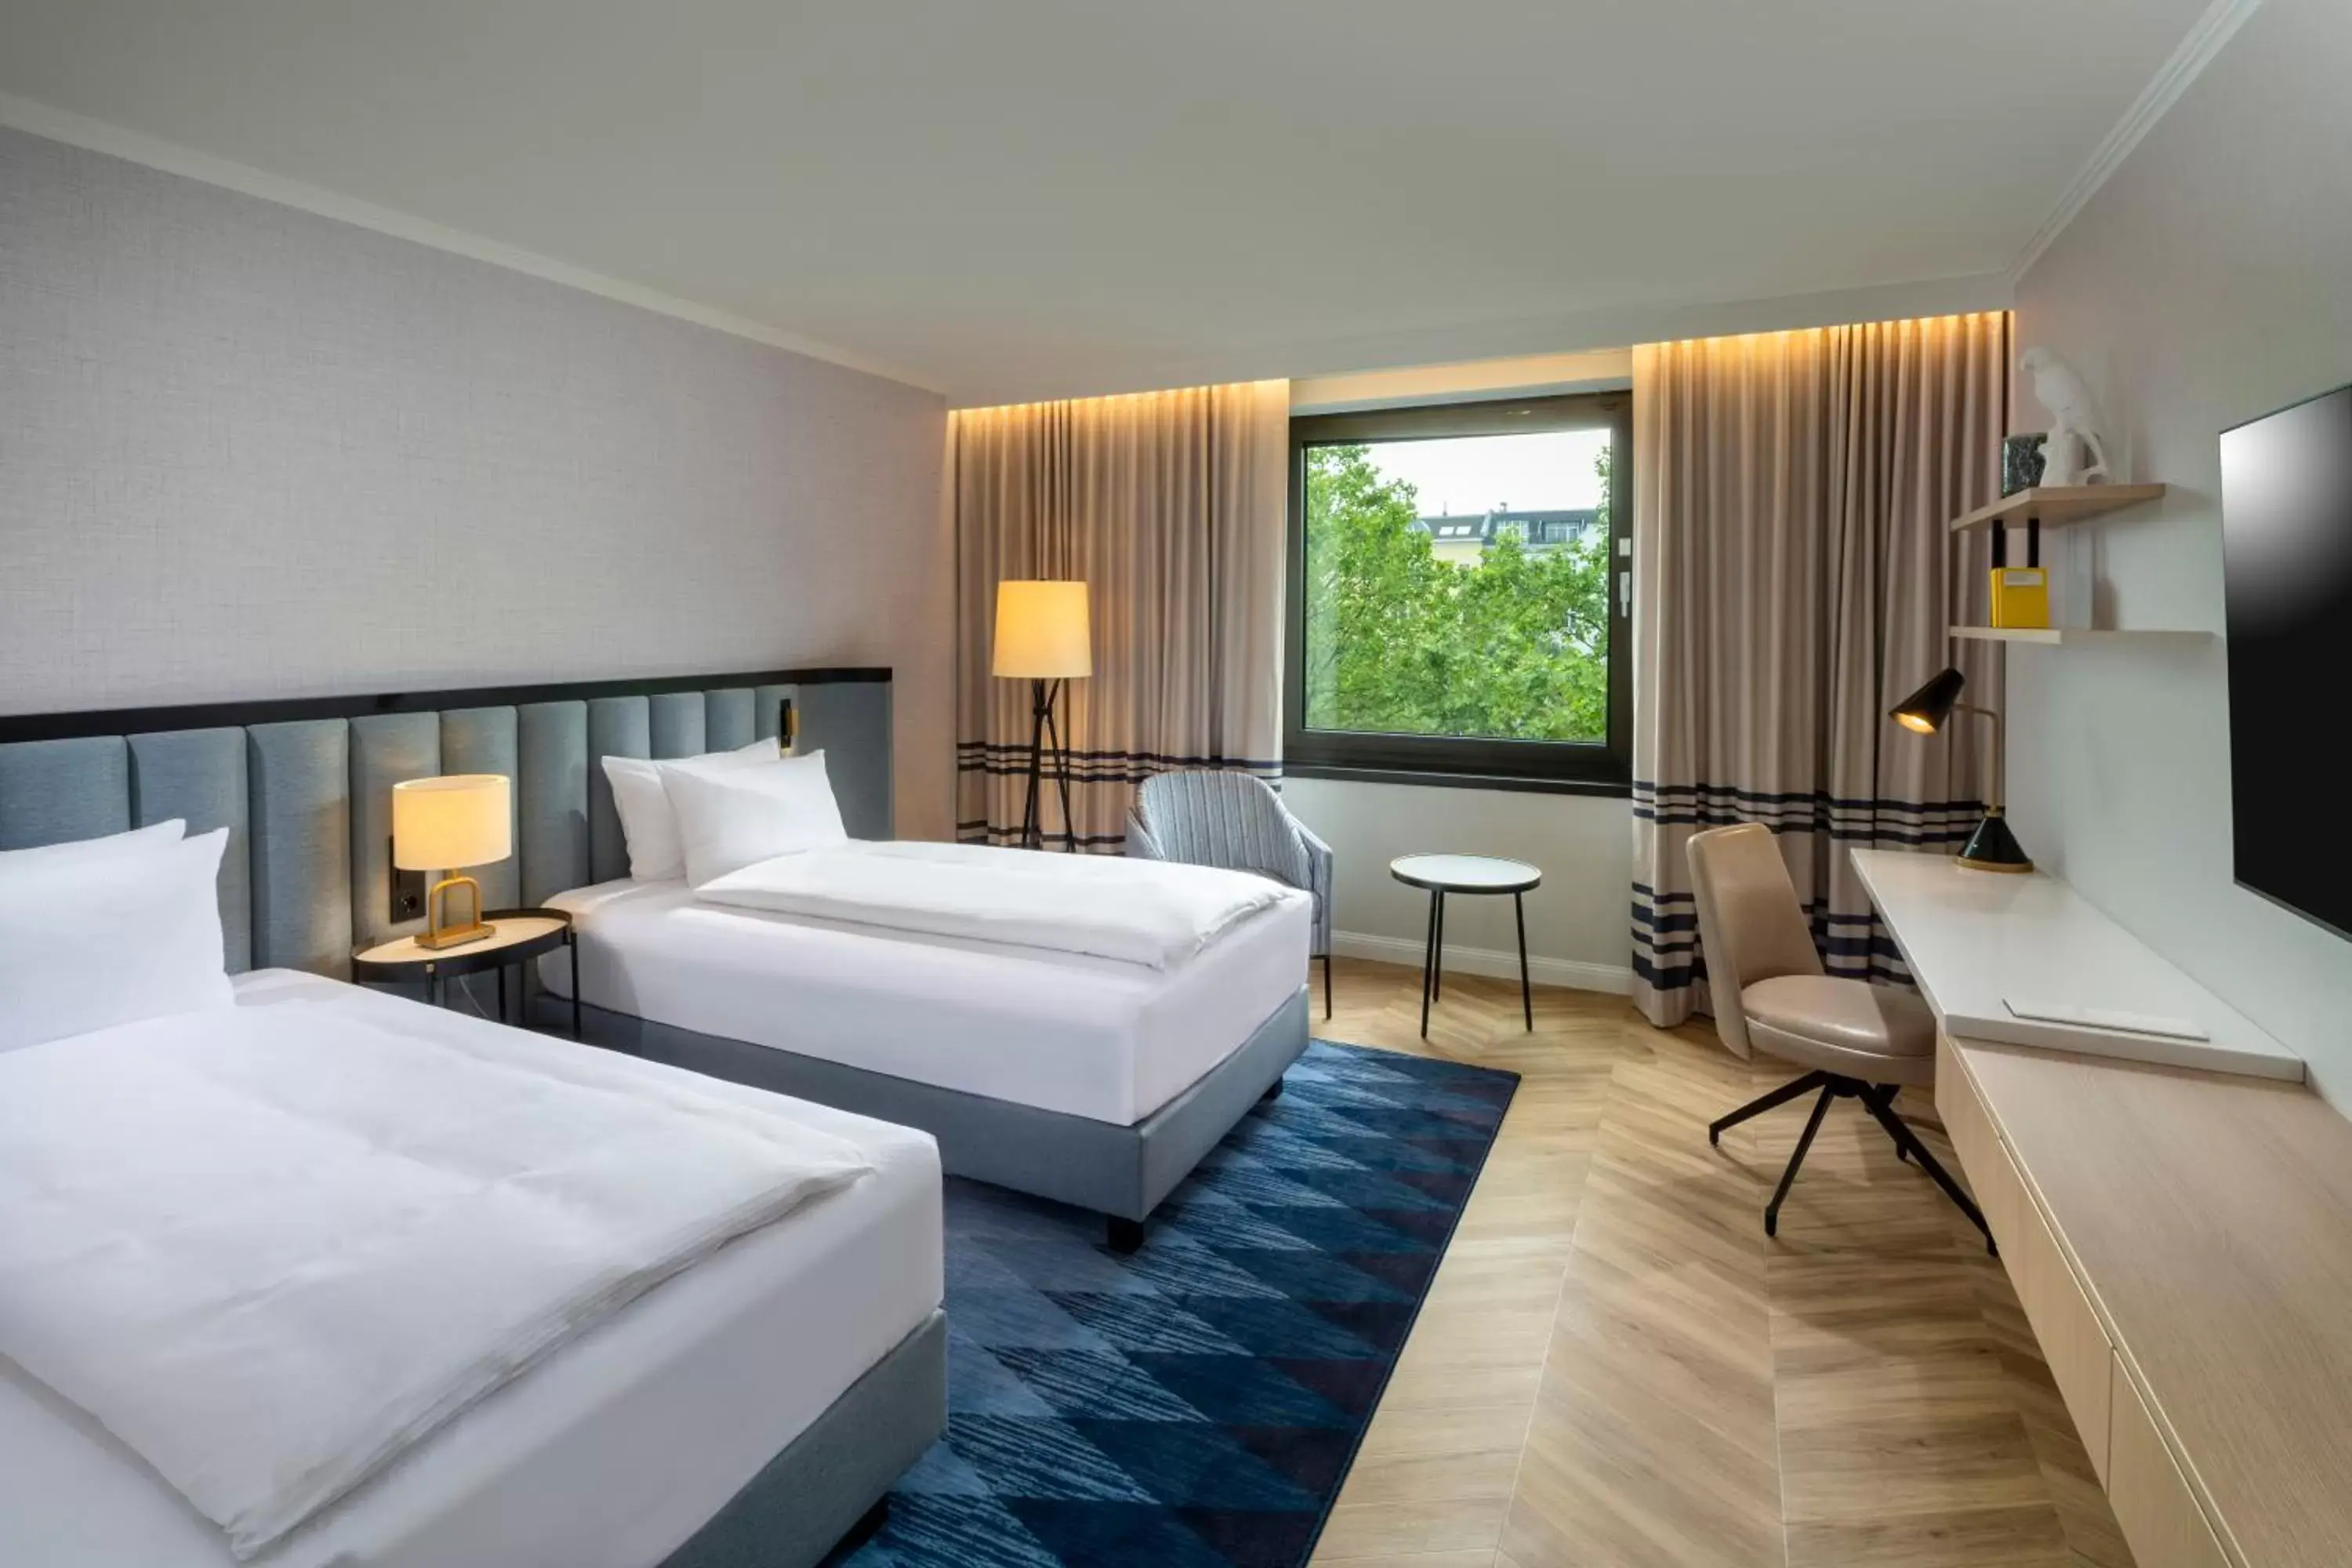 Bed in DoubleTree by Hilton Berlin Ku'damm